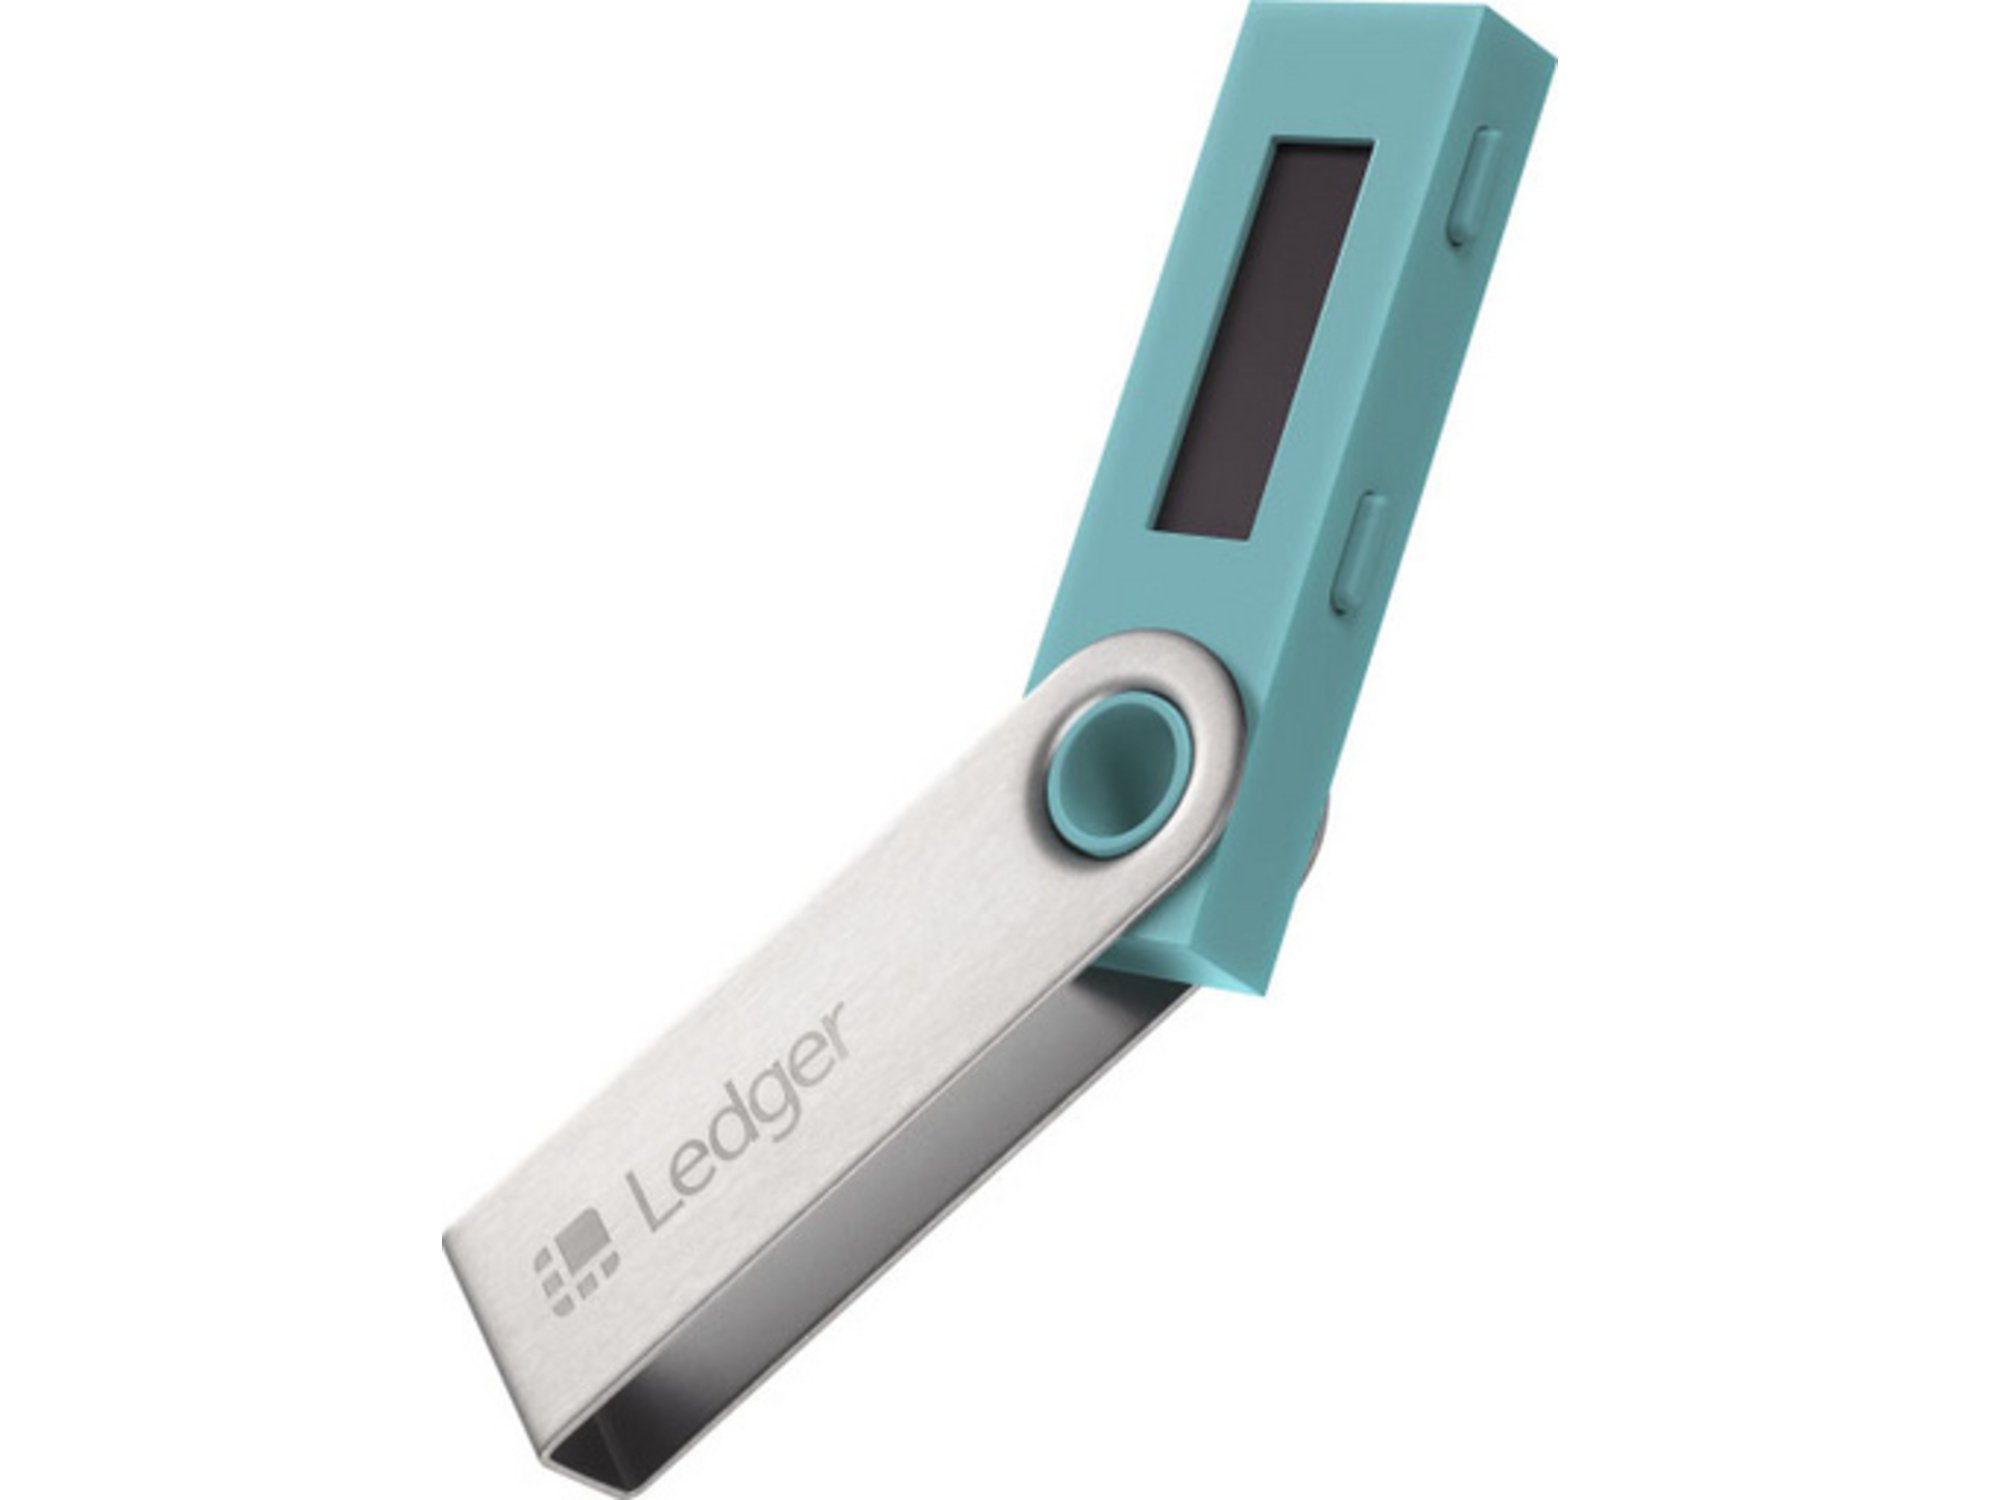 LEDGER Ledger Nano S, denarnica za Bitcoin in druge kriptovalute, turkizno modra 